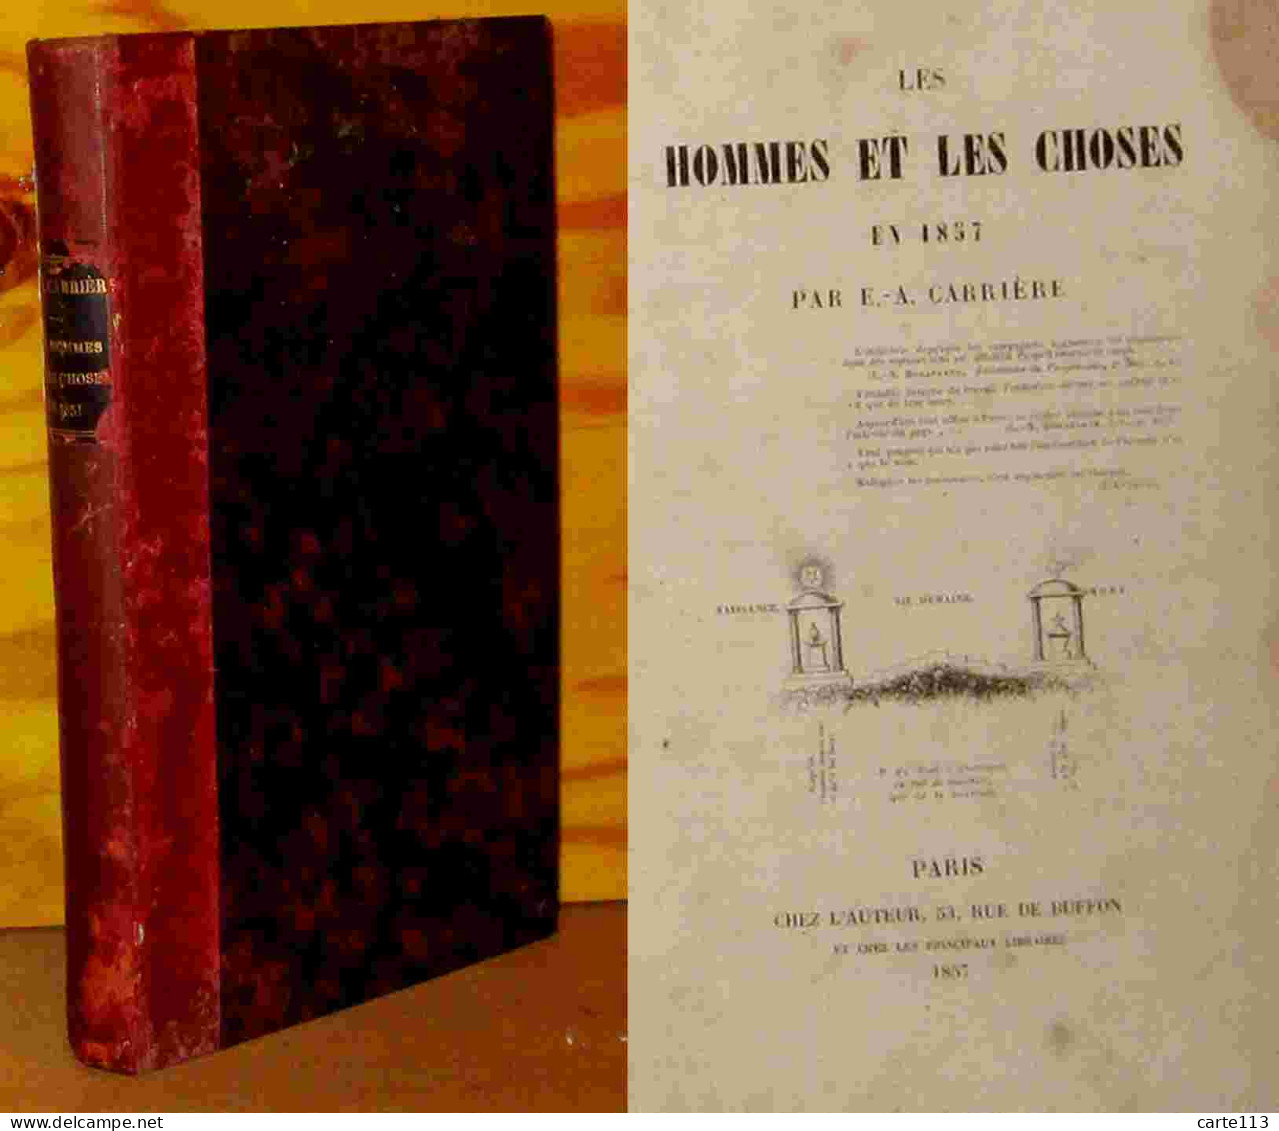 CARRIERE Elie Abel - LES HOMMES ET LES CHOSES EN 1857 - 1801-1900